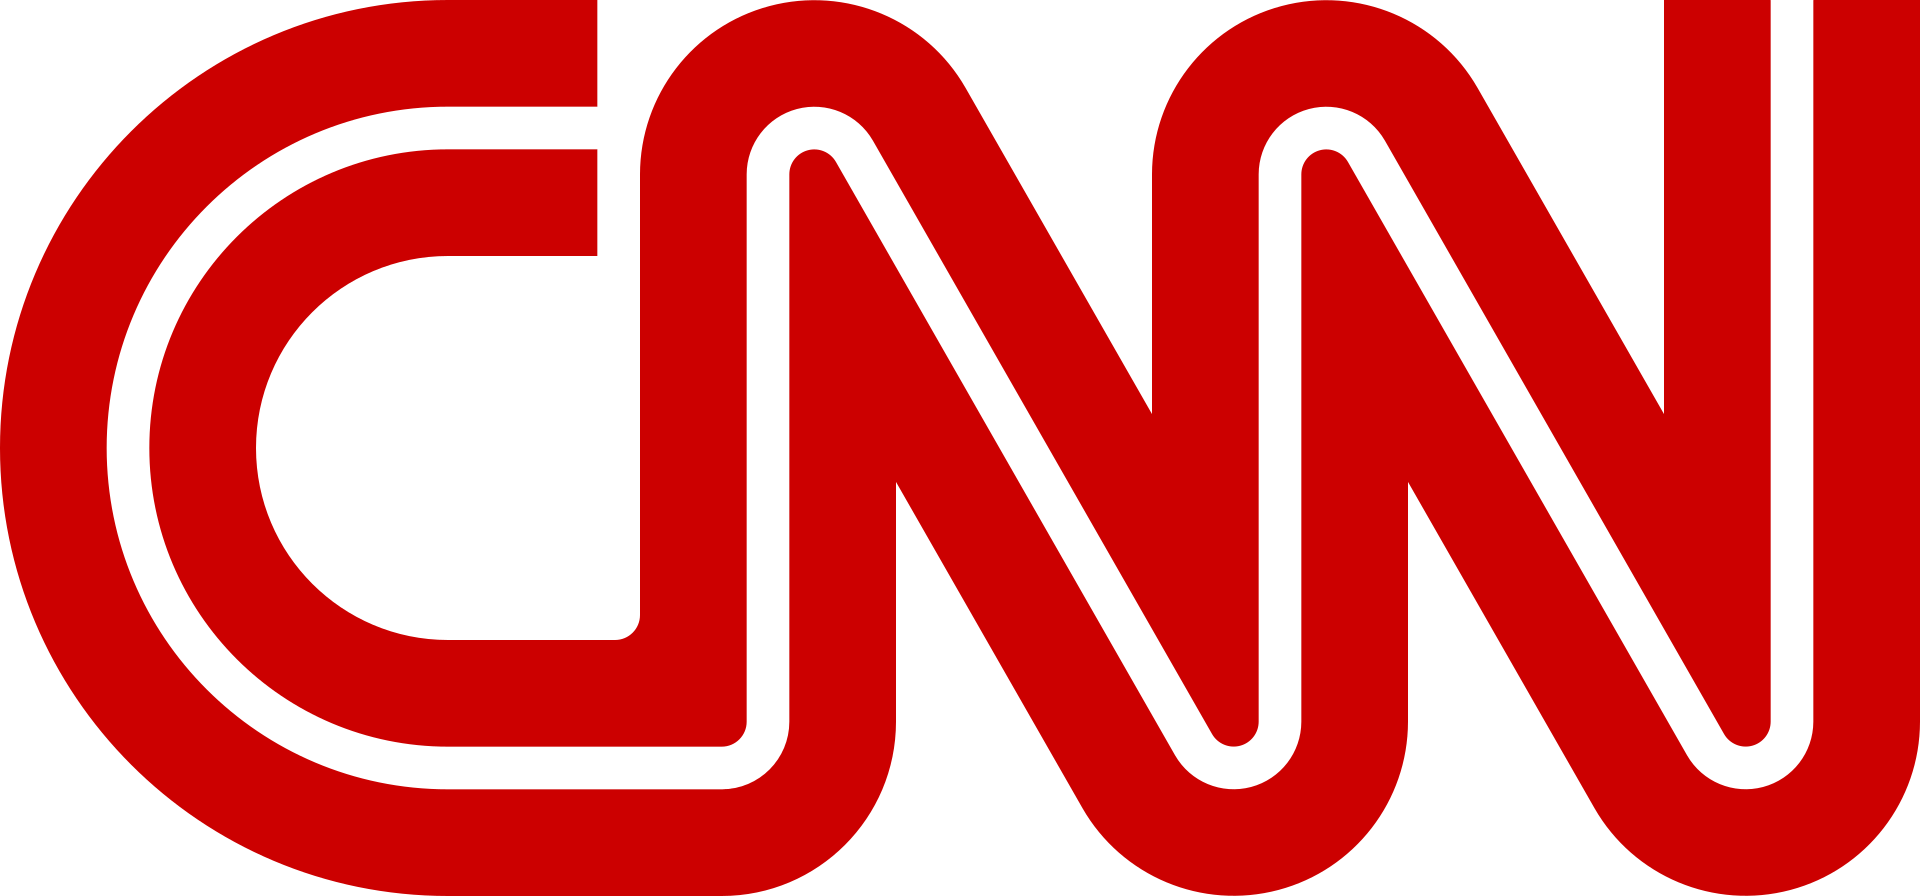 CNN_Top_Stories